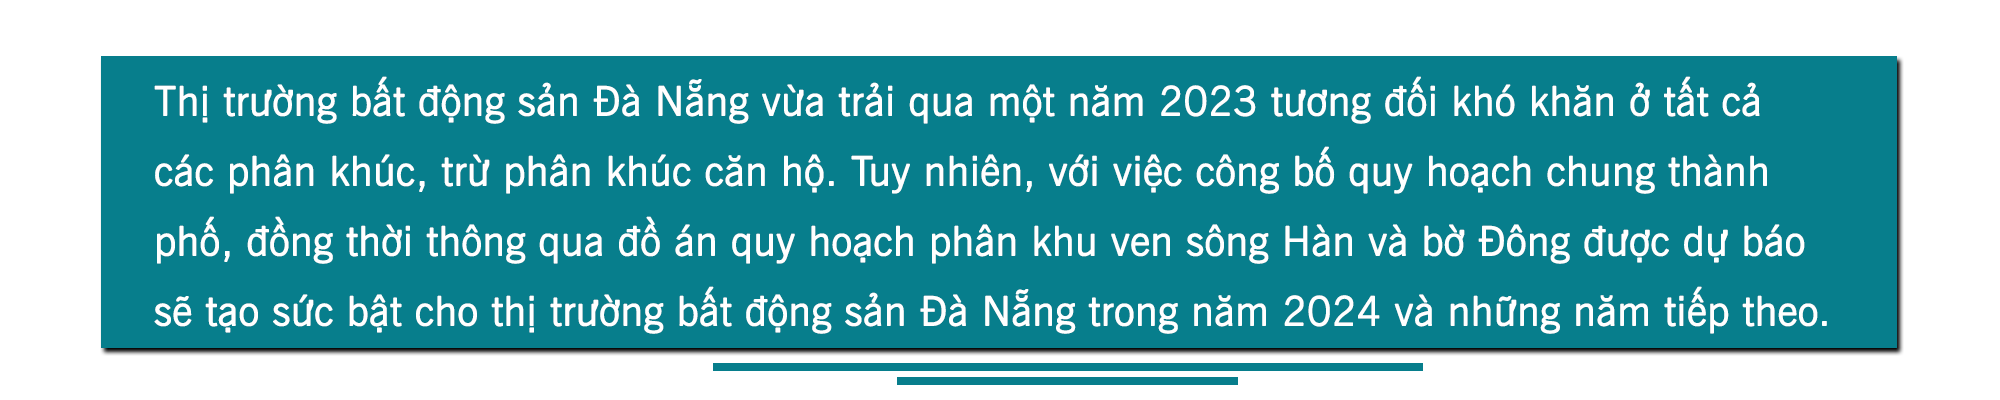 [Longform] Bất động sản Đà Nẵng 2024: “Ngụp lặn” suốt 1 năm, đã đến lúc “thức giấc”? - Ảnh 2